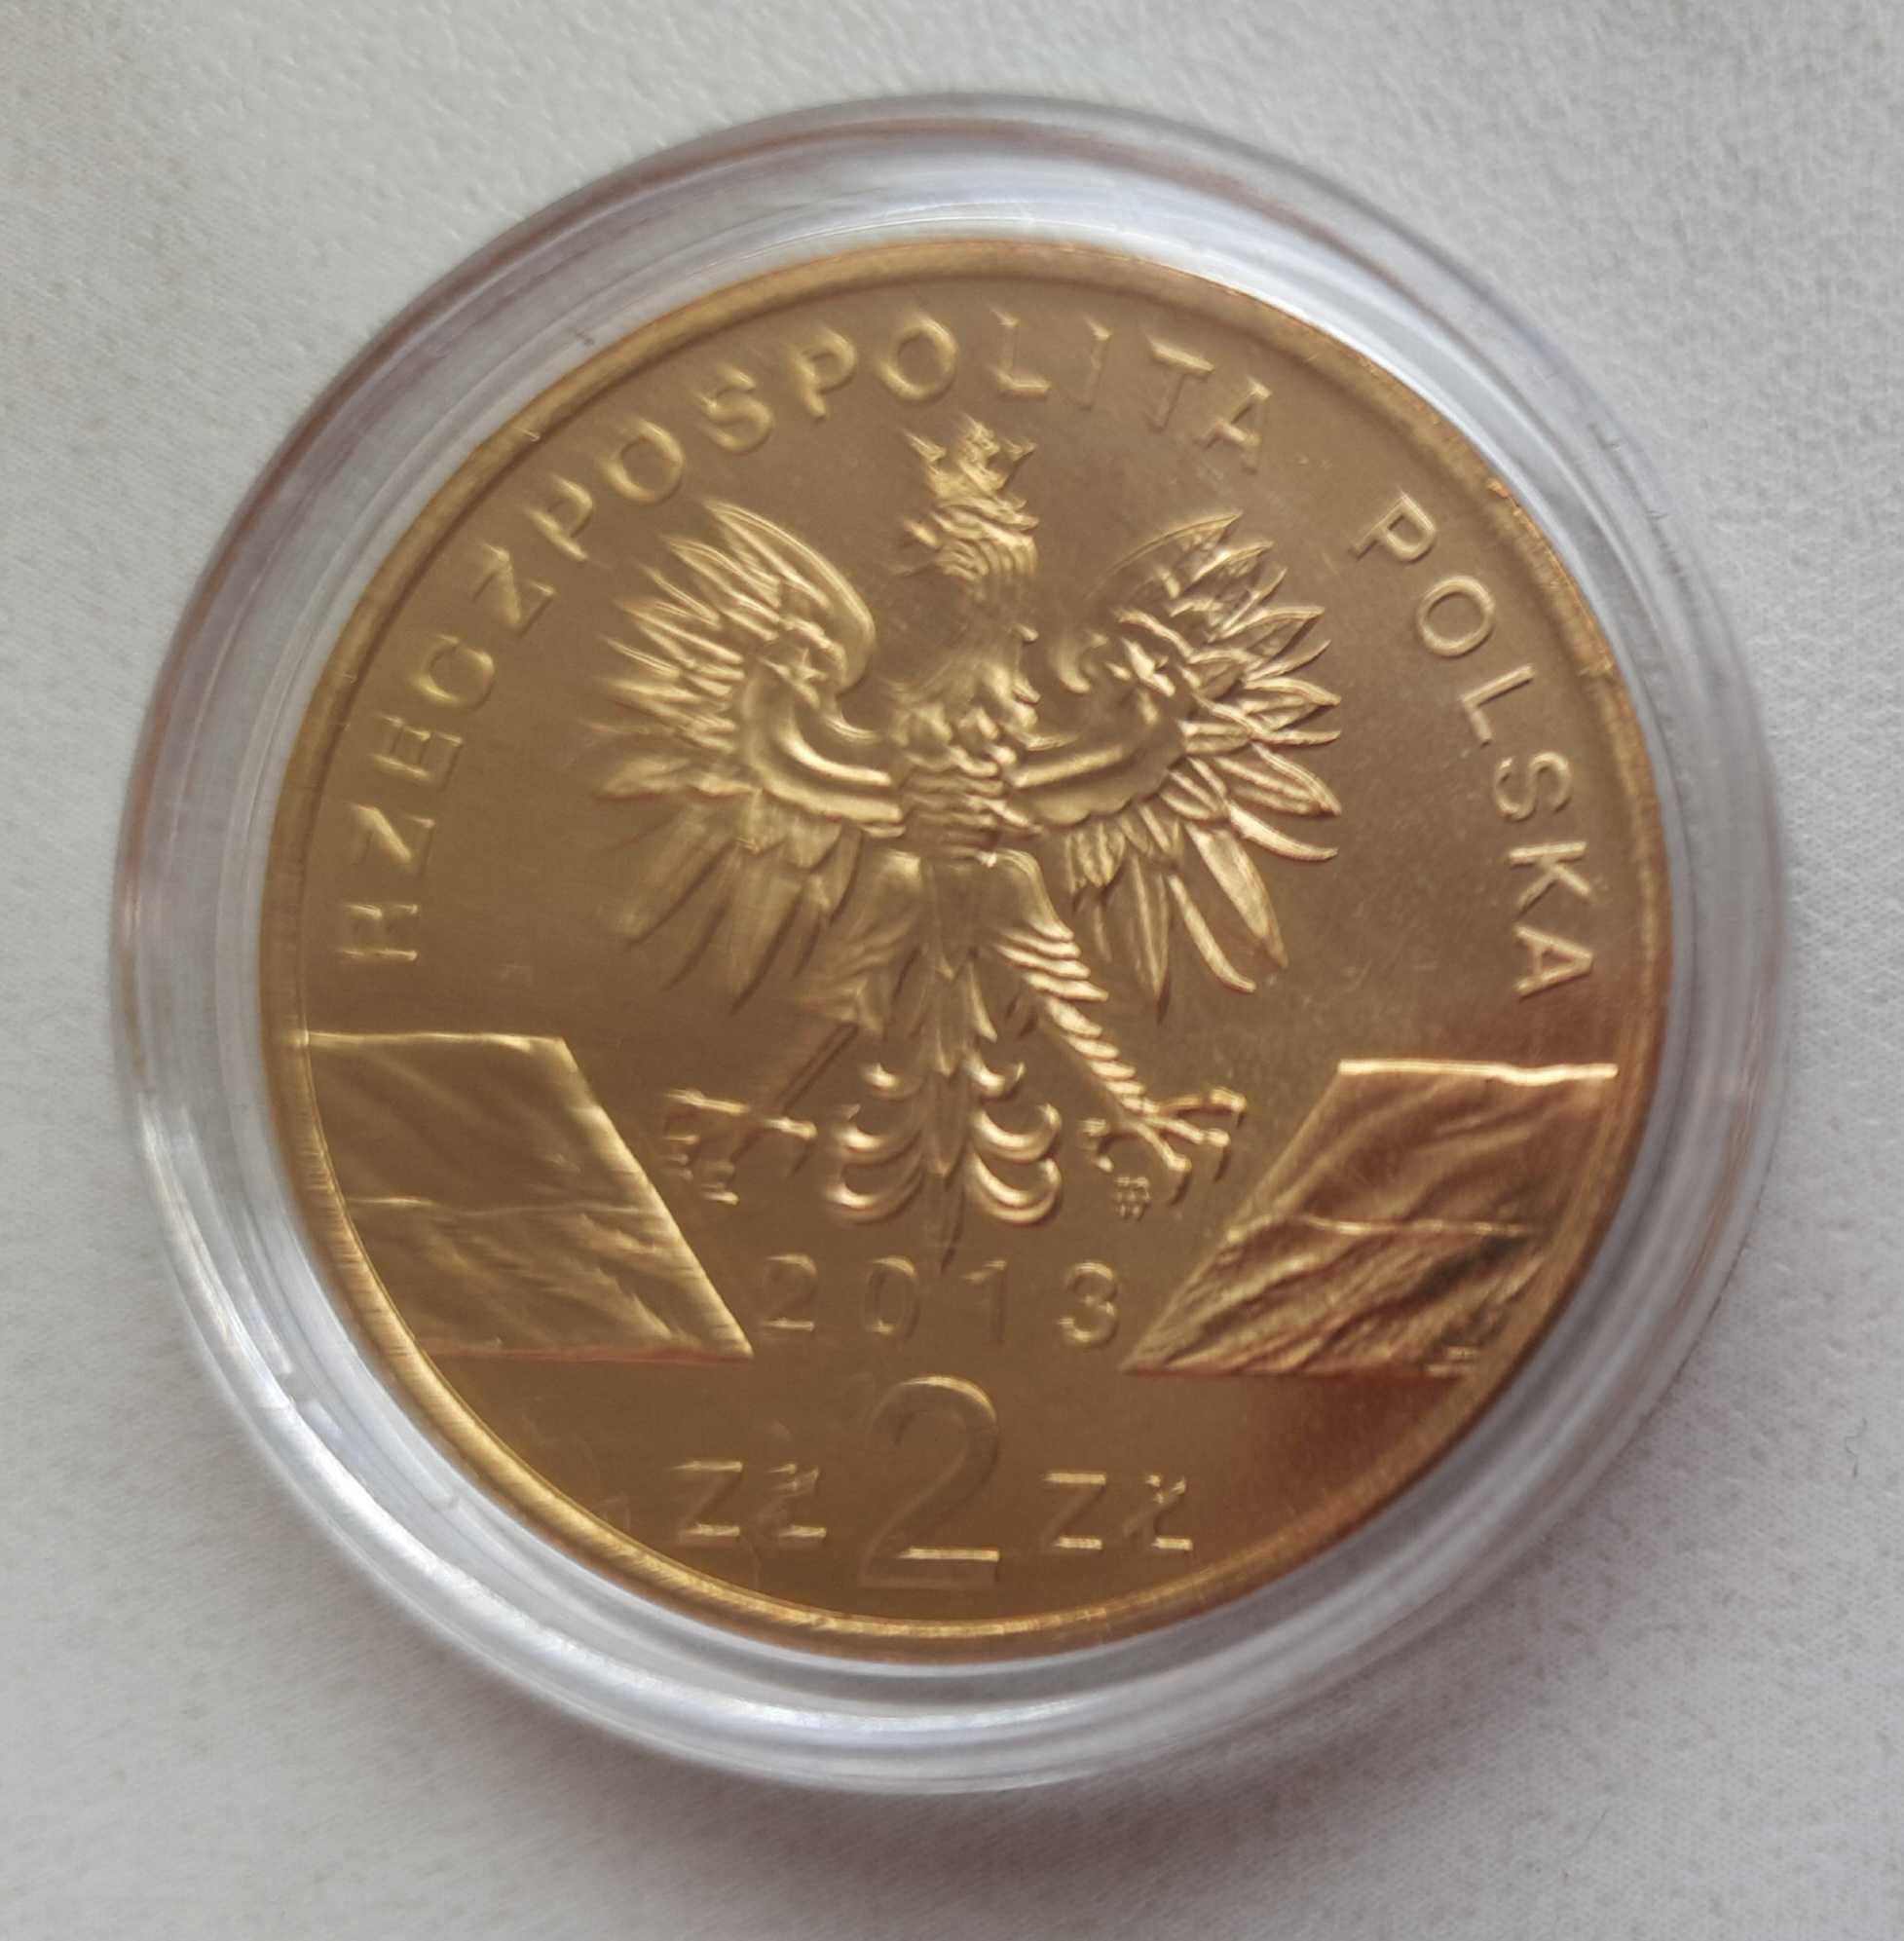 4 monety 2 zł: konik polski, żubr, foka szara i borsuk